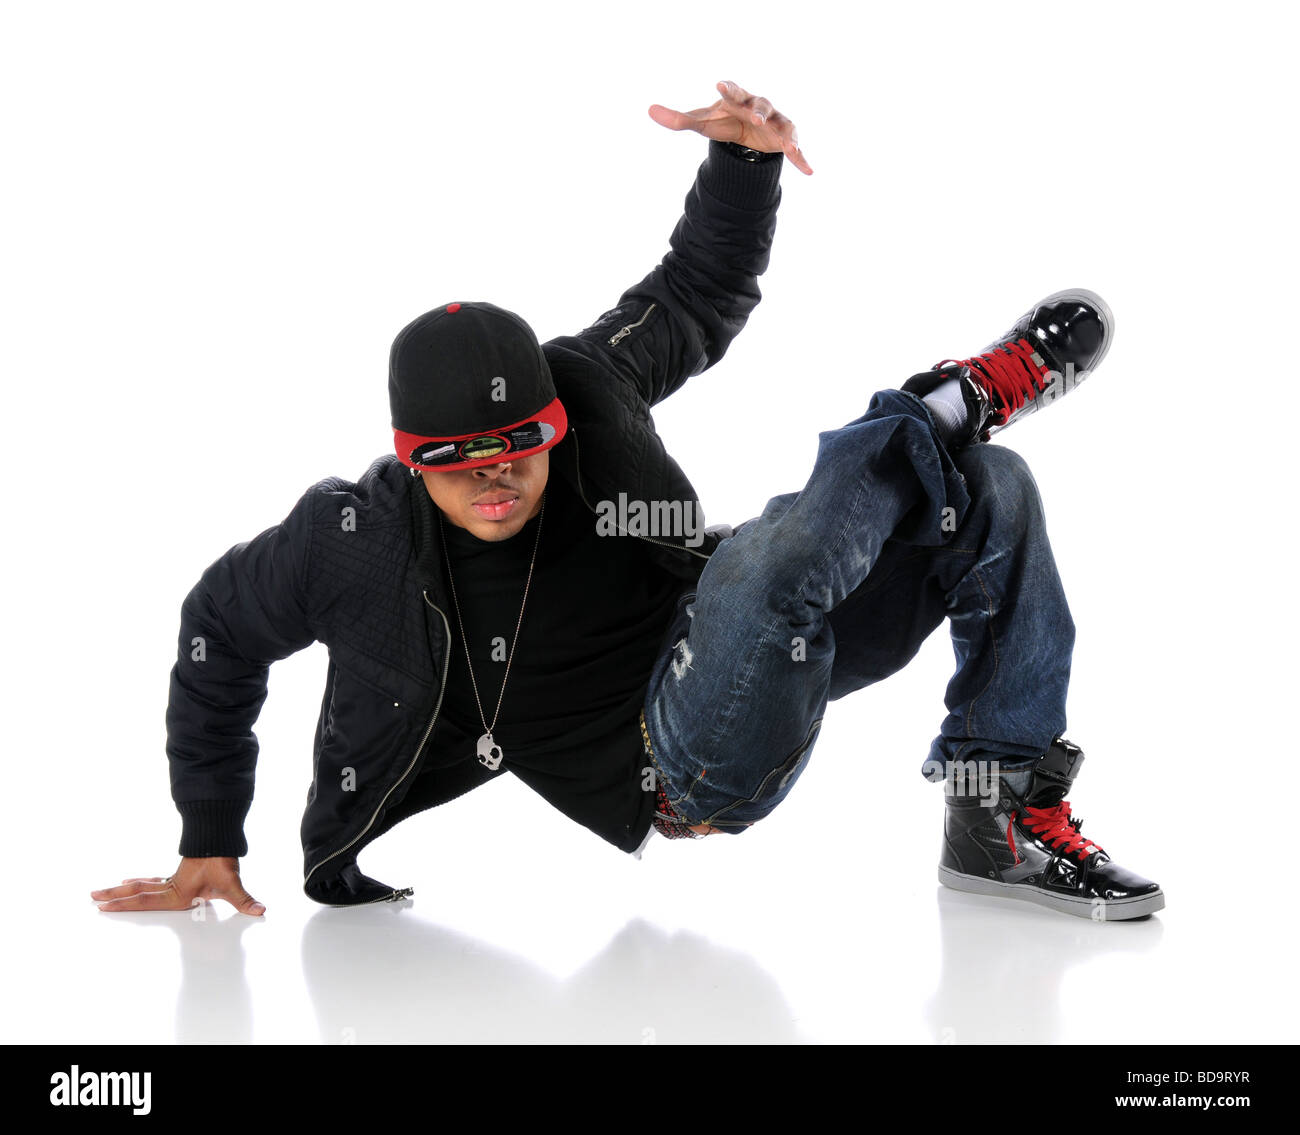 Cultura hip hop immagini e fotografie stock ad alta risoluzione - Alamy